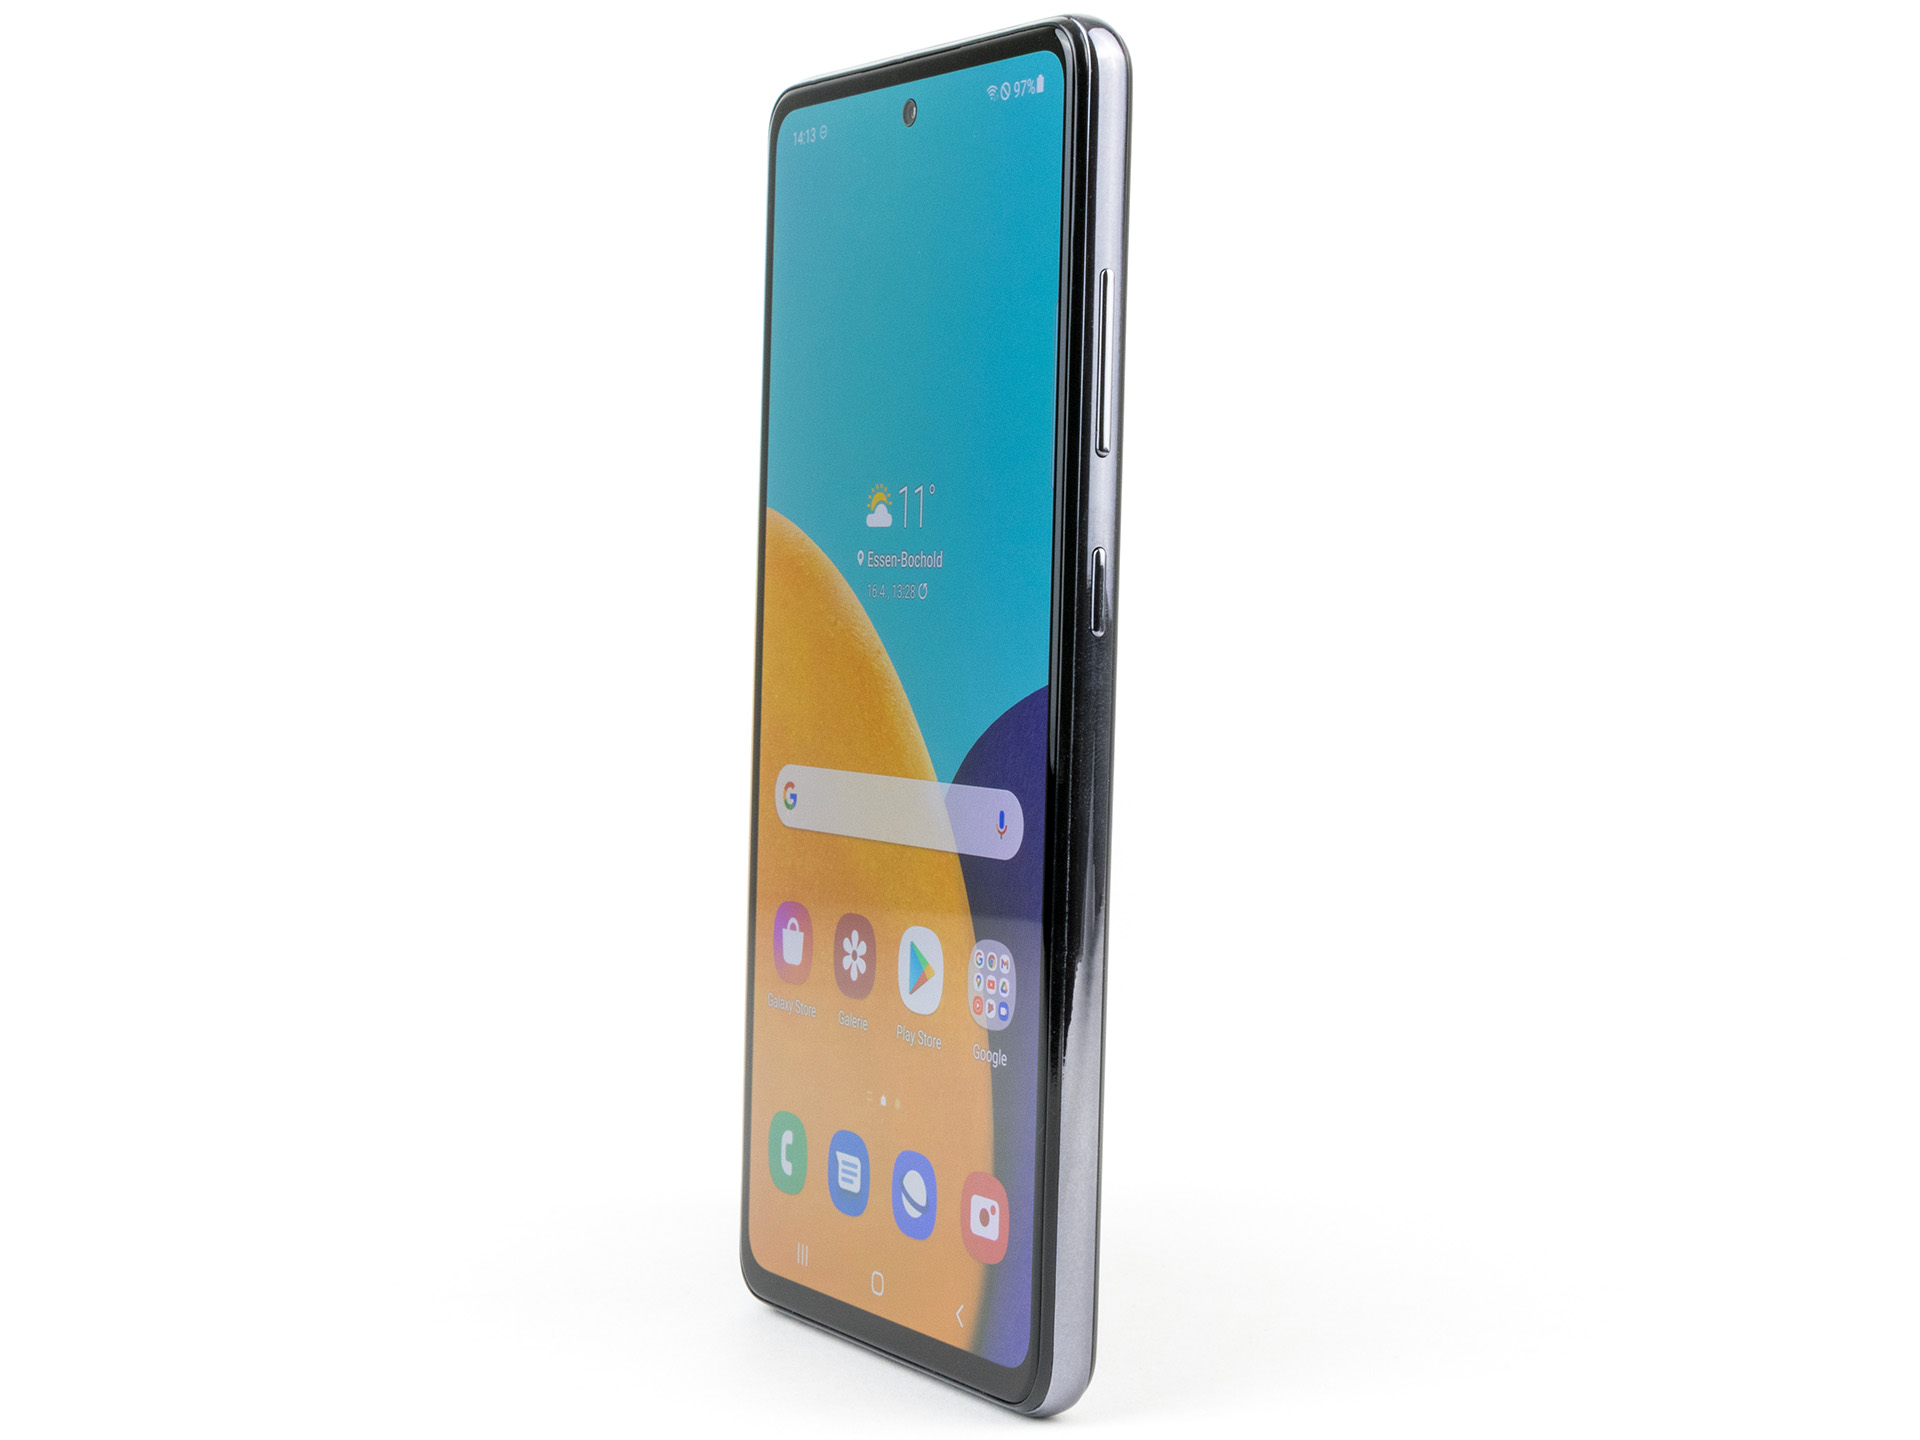 Samsung Galaxy A52 5G là chiếc điện thoại trung cấp lý tưởng với thiết kế bắt mắt, hiệu năng mạnh mẽ và tính năng đáng kể. Với mức giá hợp lý, Samsung Galaxy A52 5G đáng để bạn sở hữu và trải nghiệm.